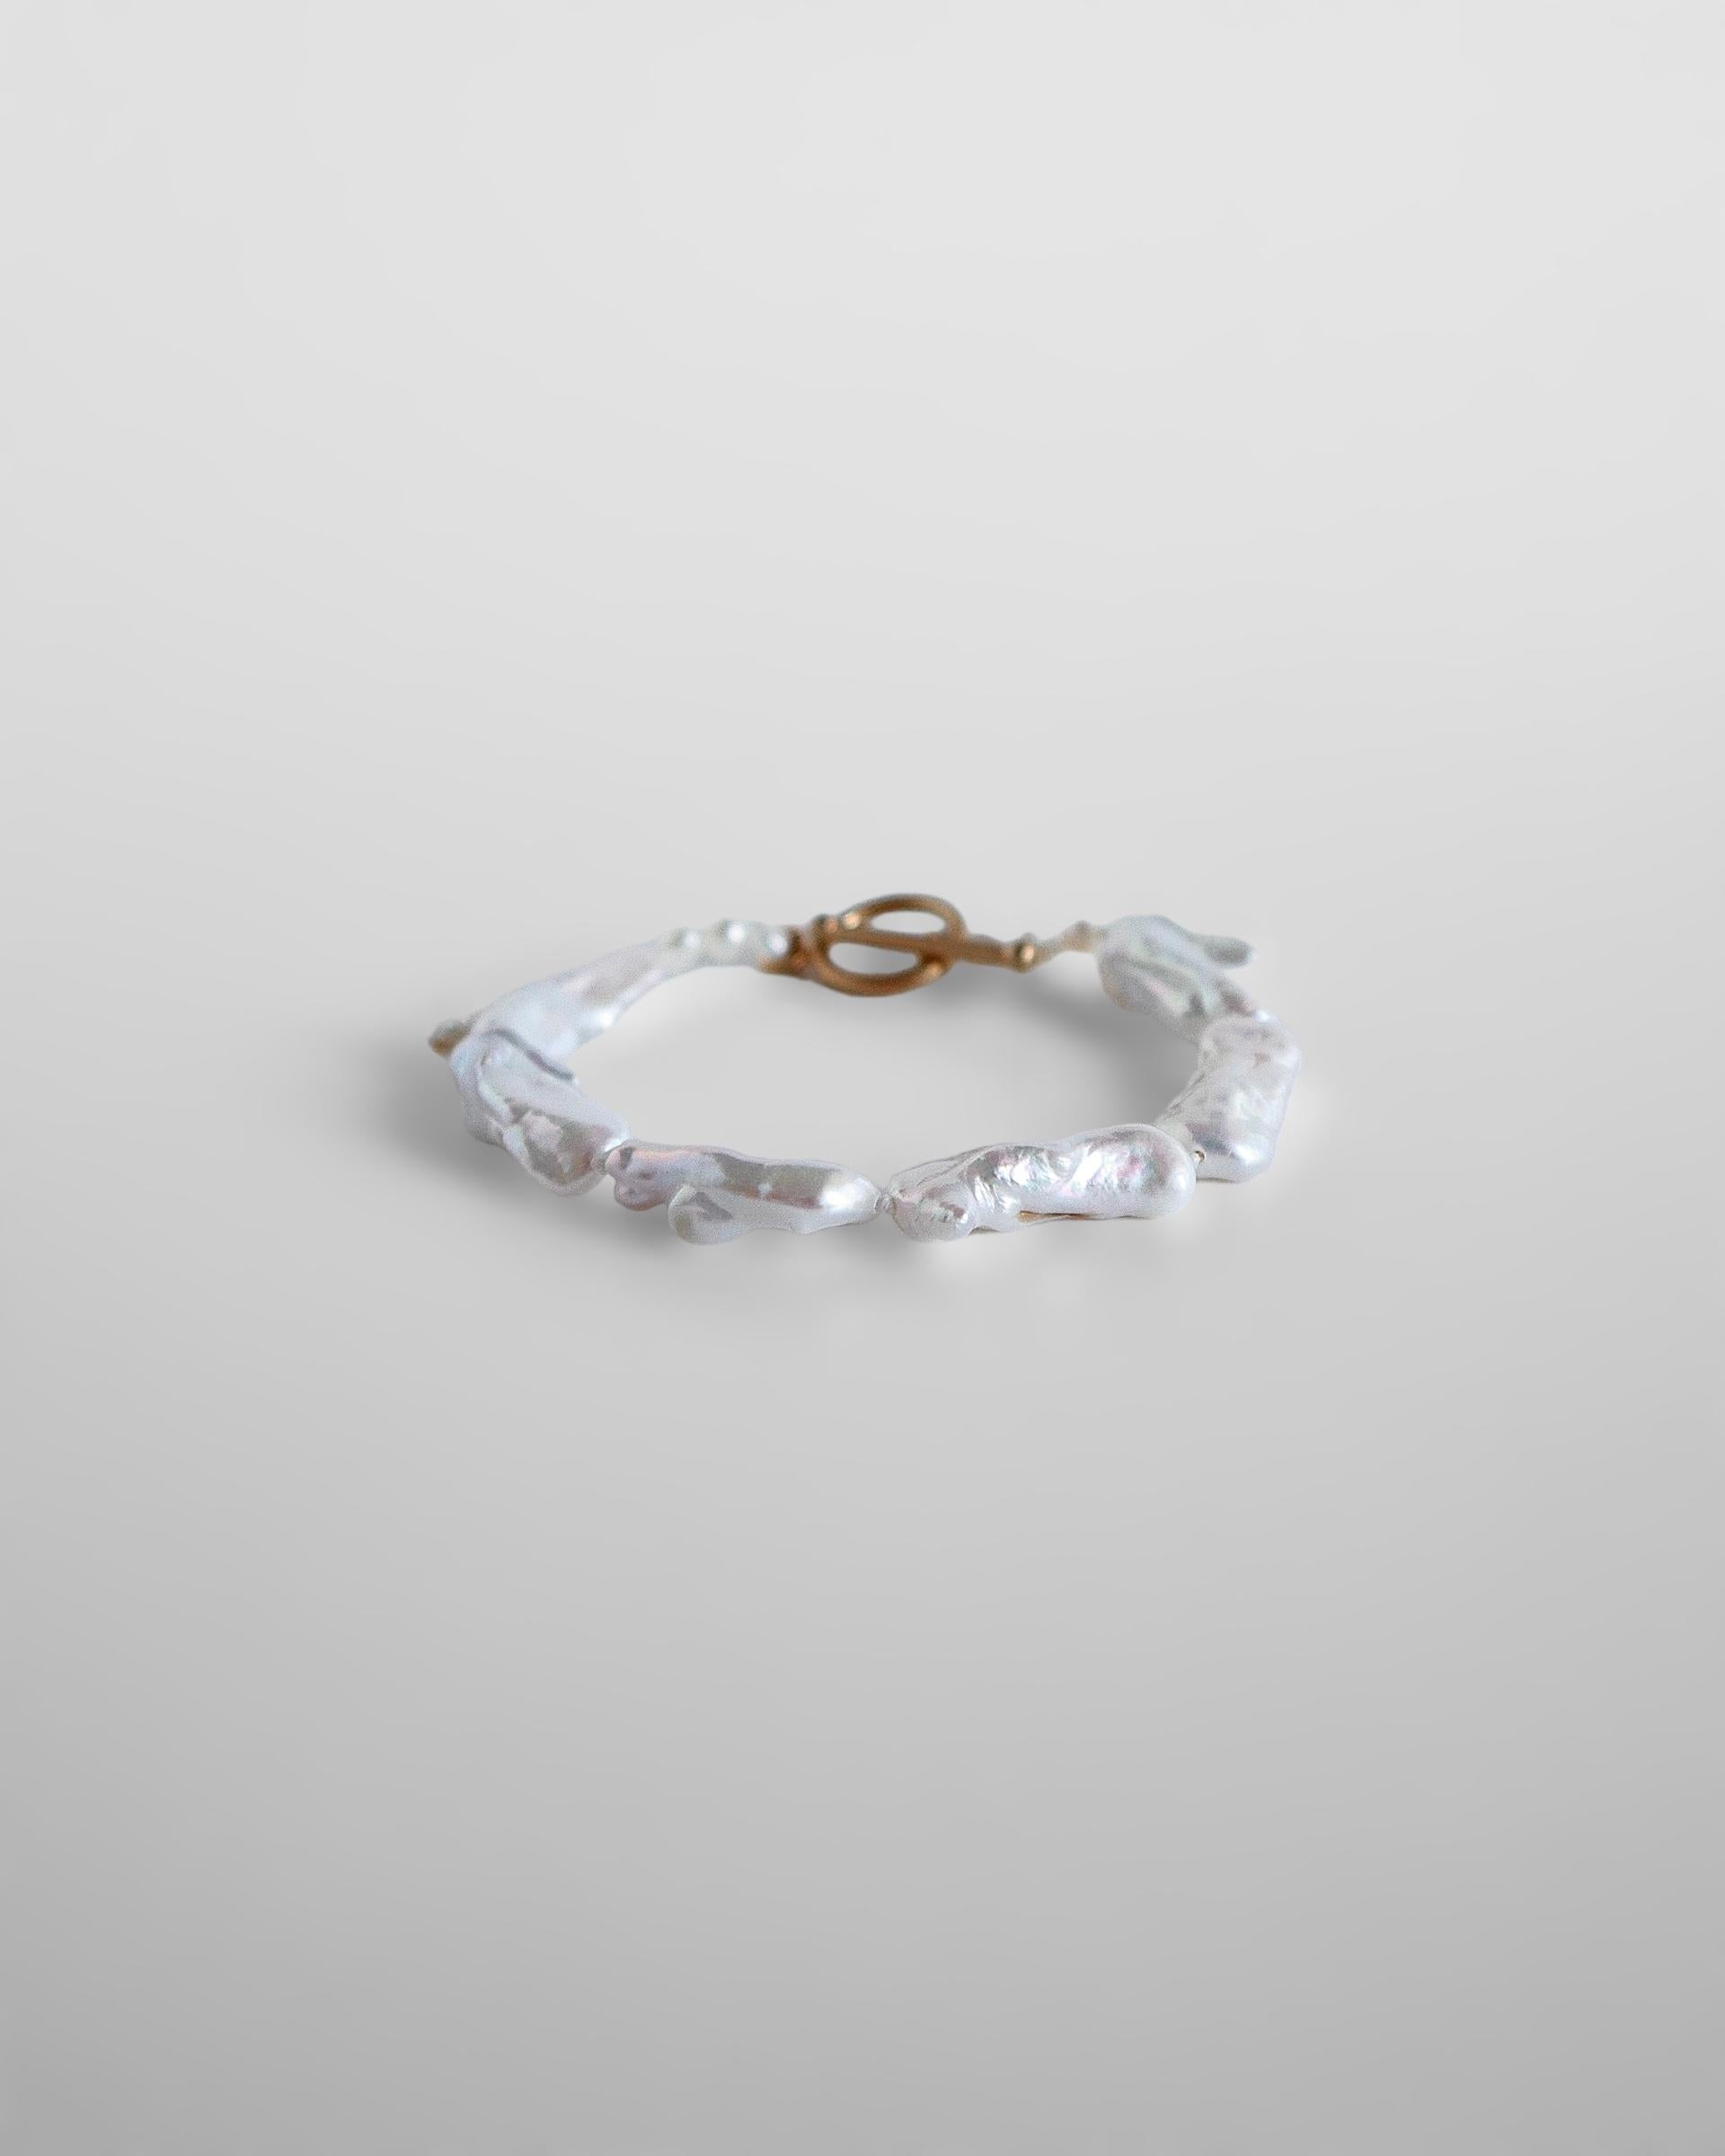 Gönnen Sie sich die zeitlose Raffinesse des Hera-Armbands, einer modernen Interpretation des klassischen Perlenarmbands. Der wunderschön gestaltete Verschluss verleiht einen Hauch von Kühnheit und hebt Ihre Ästhetik mühelos hervor.

Versand